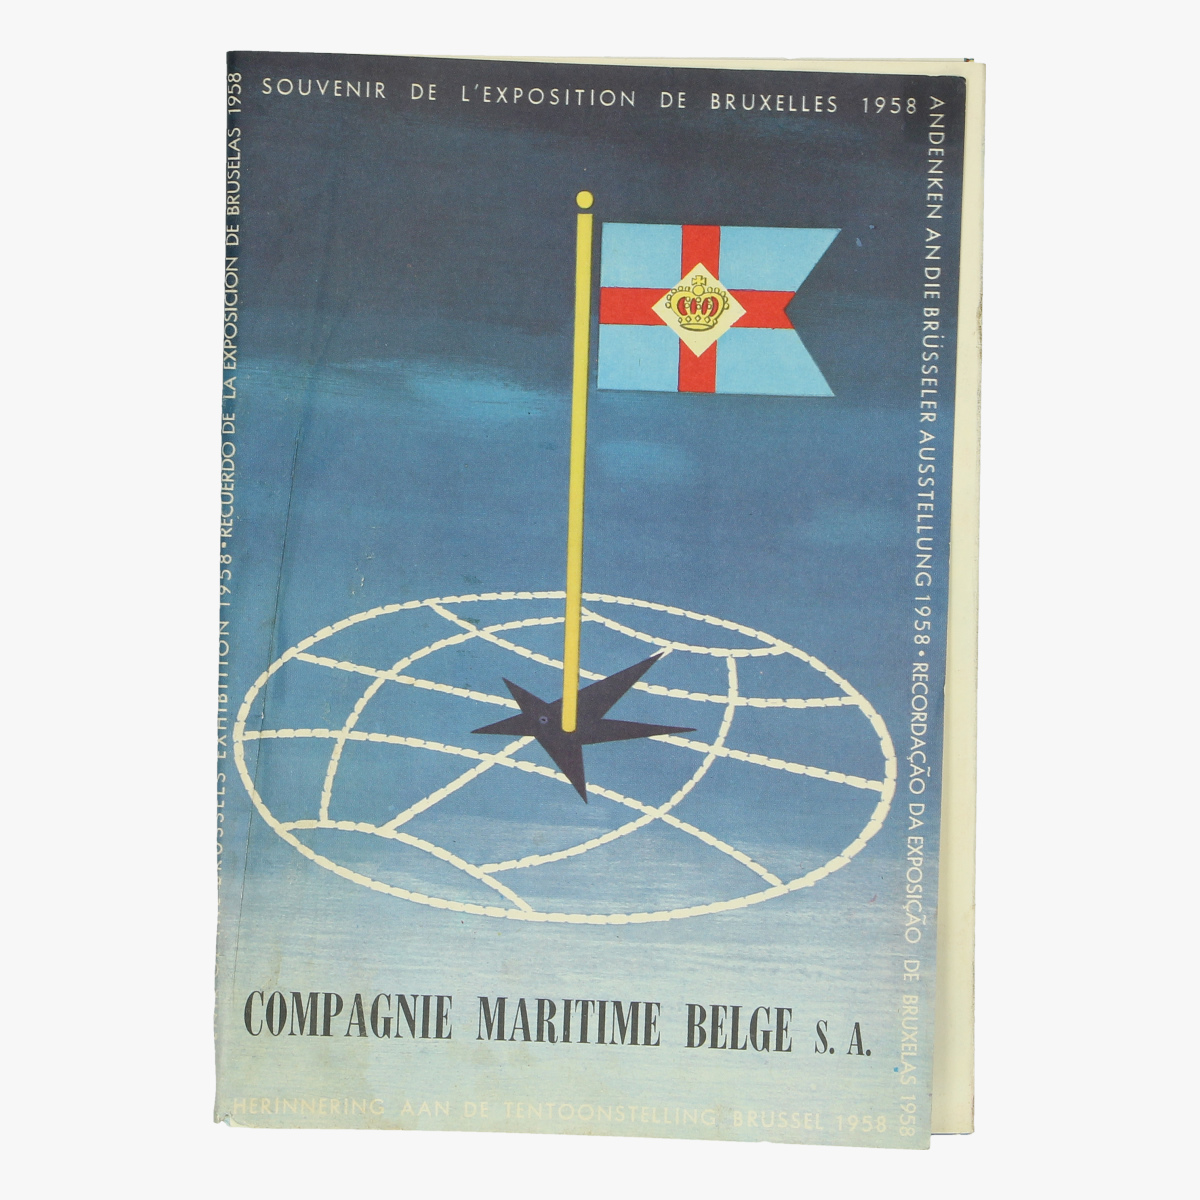 Afbeeldingen van expo 58 compagnie maritime belge s.a. herinnering aan de tentoonstelling brussel 1958